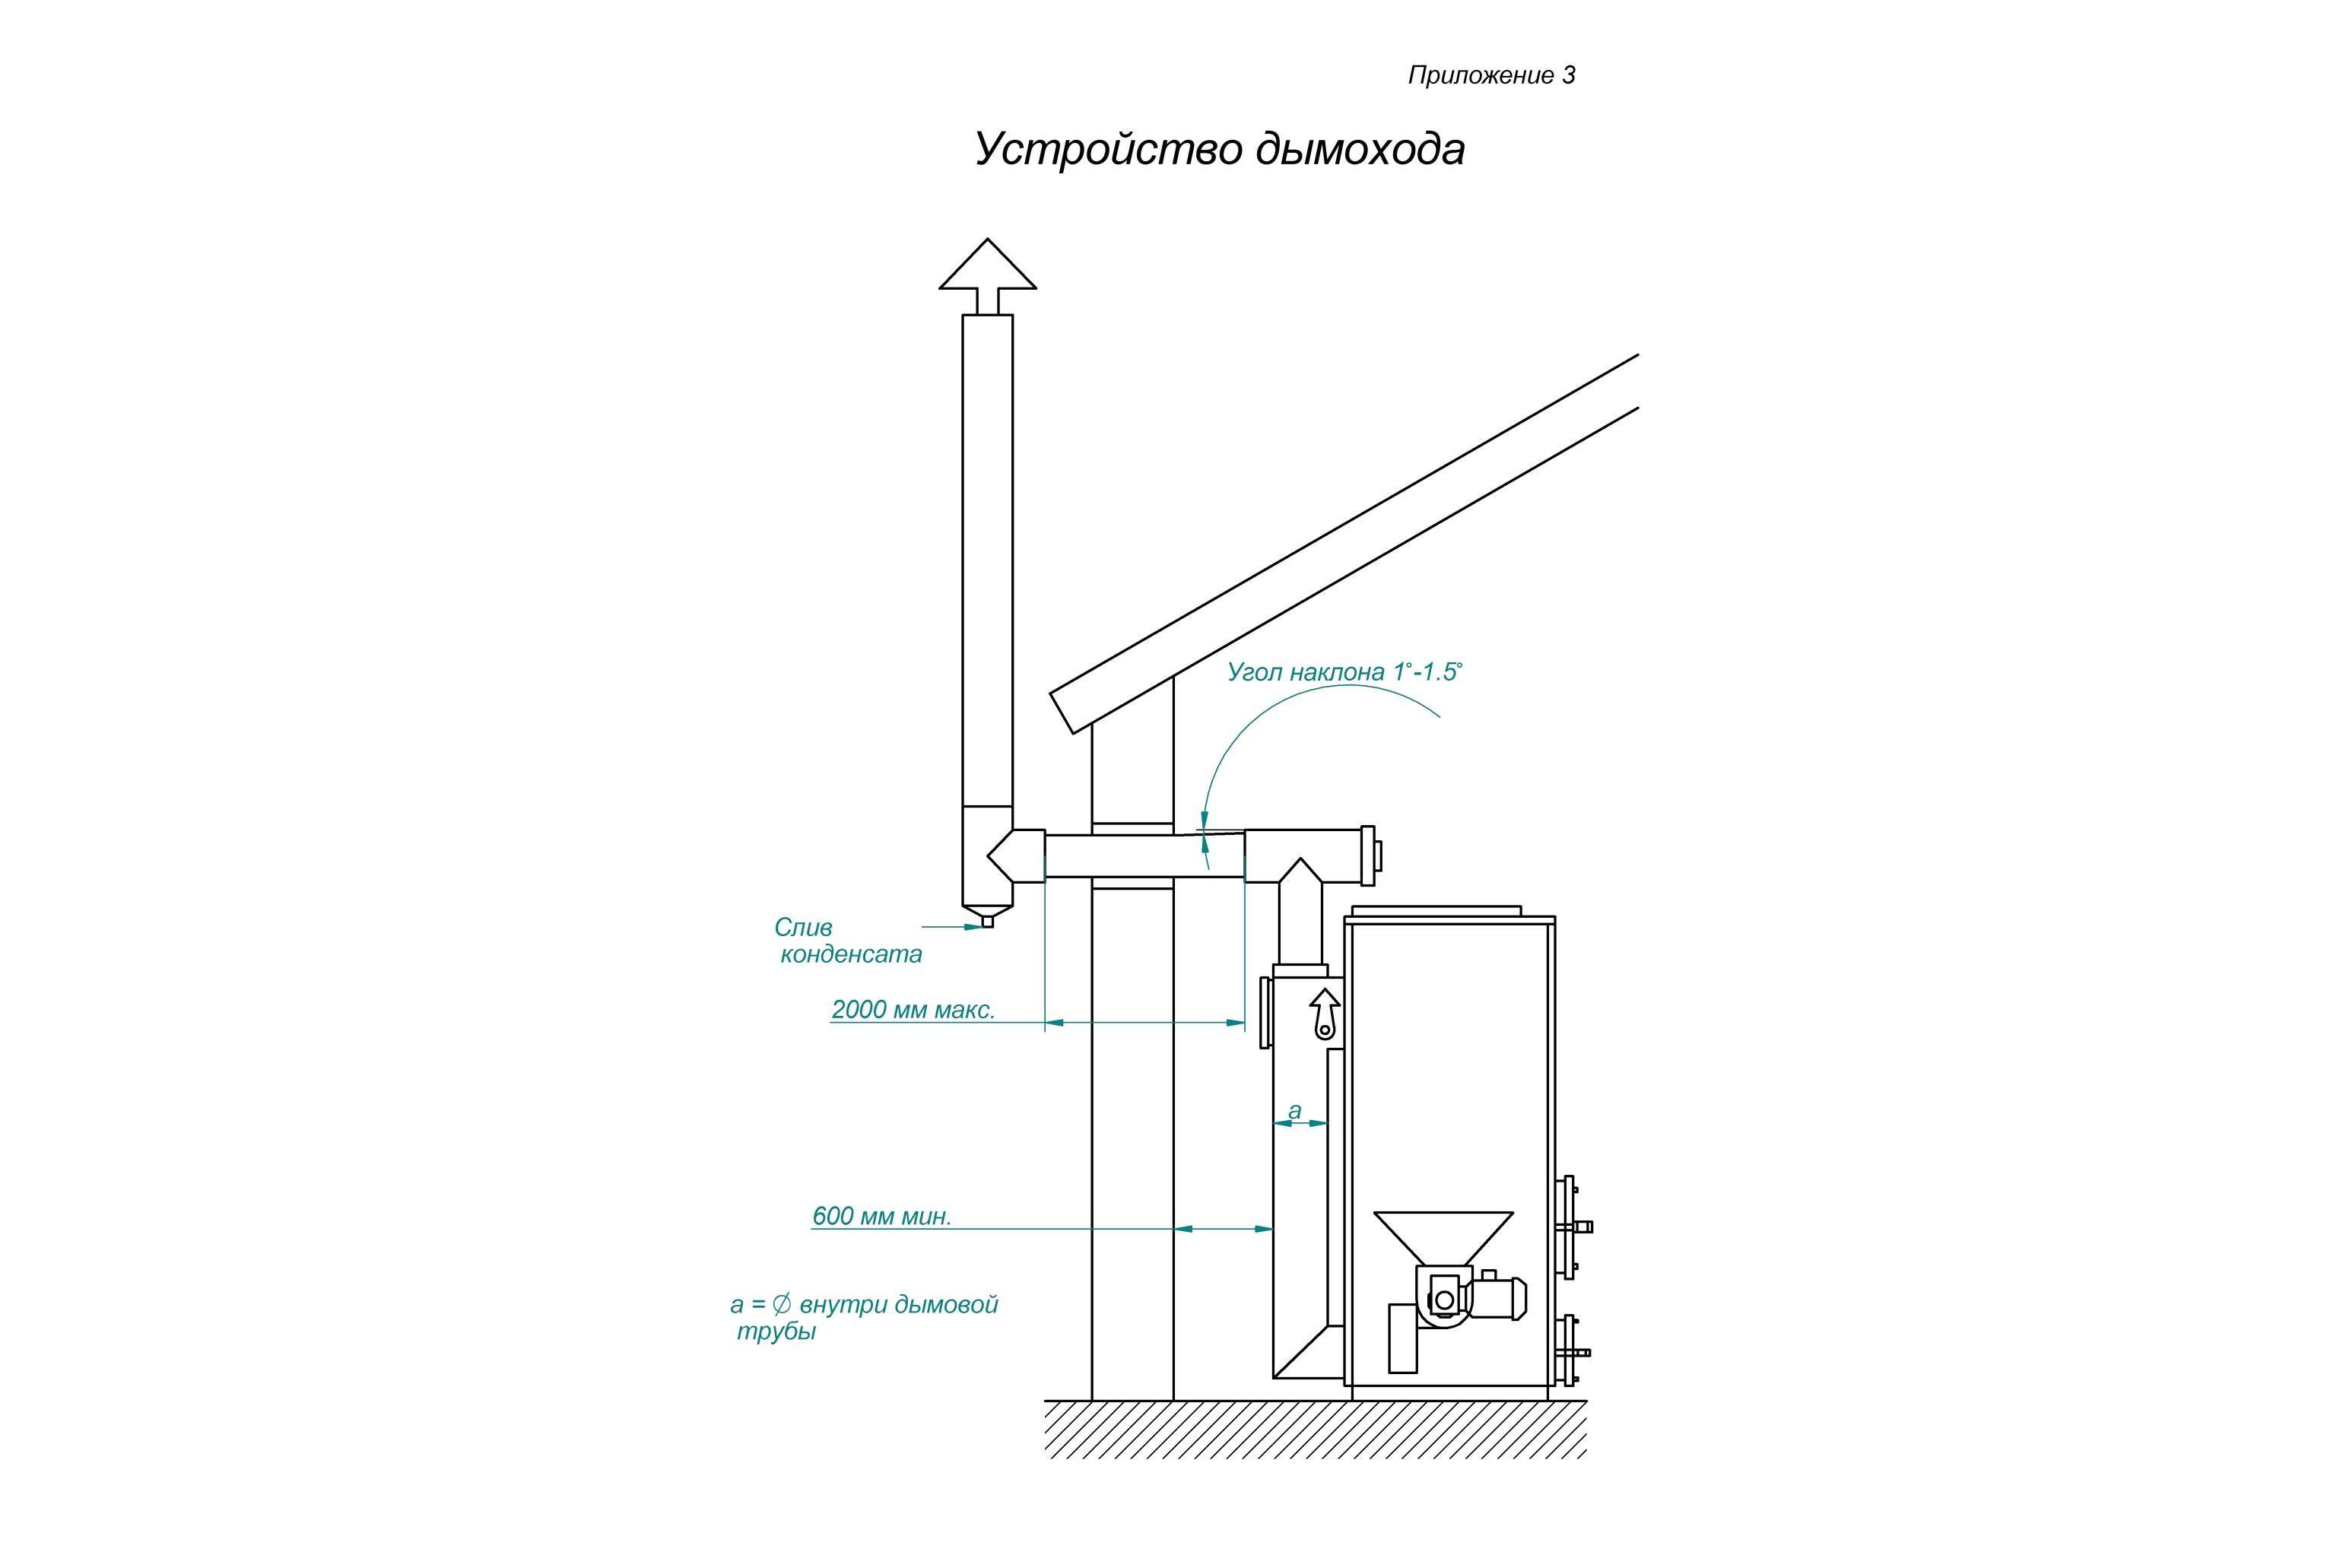 Как избавиться от конденсата в трубе вентиляции: тонкости устранения капель из воздуховода